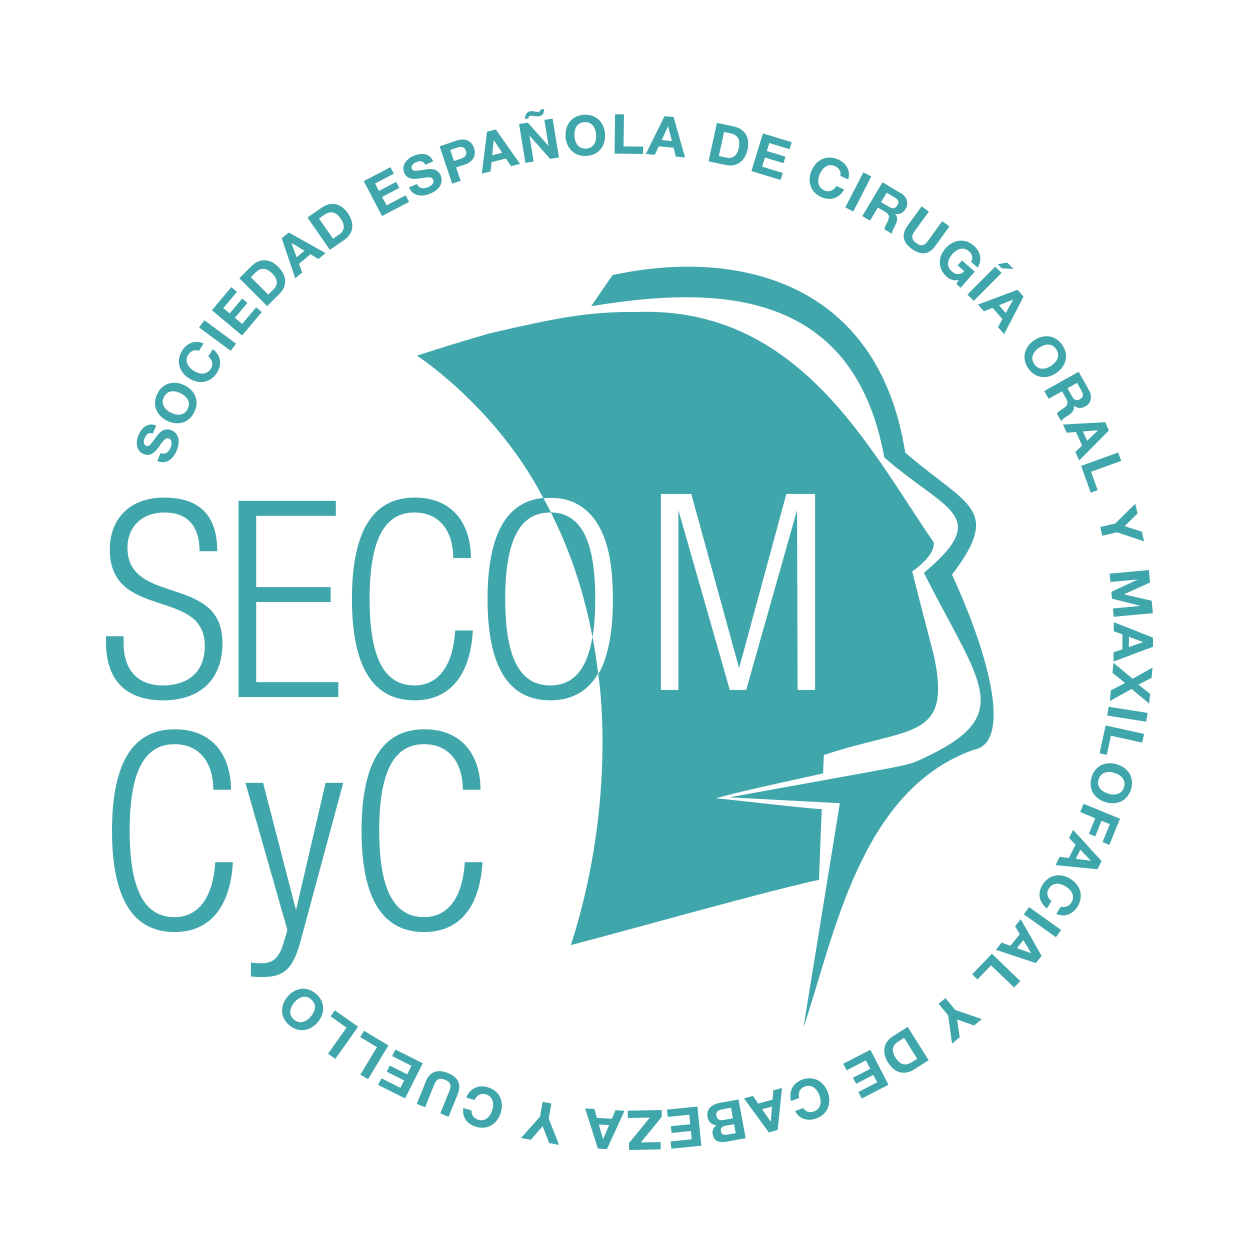 (c) Secomcyconline.com